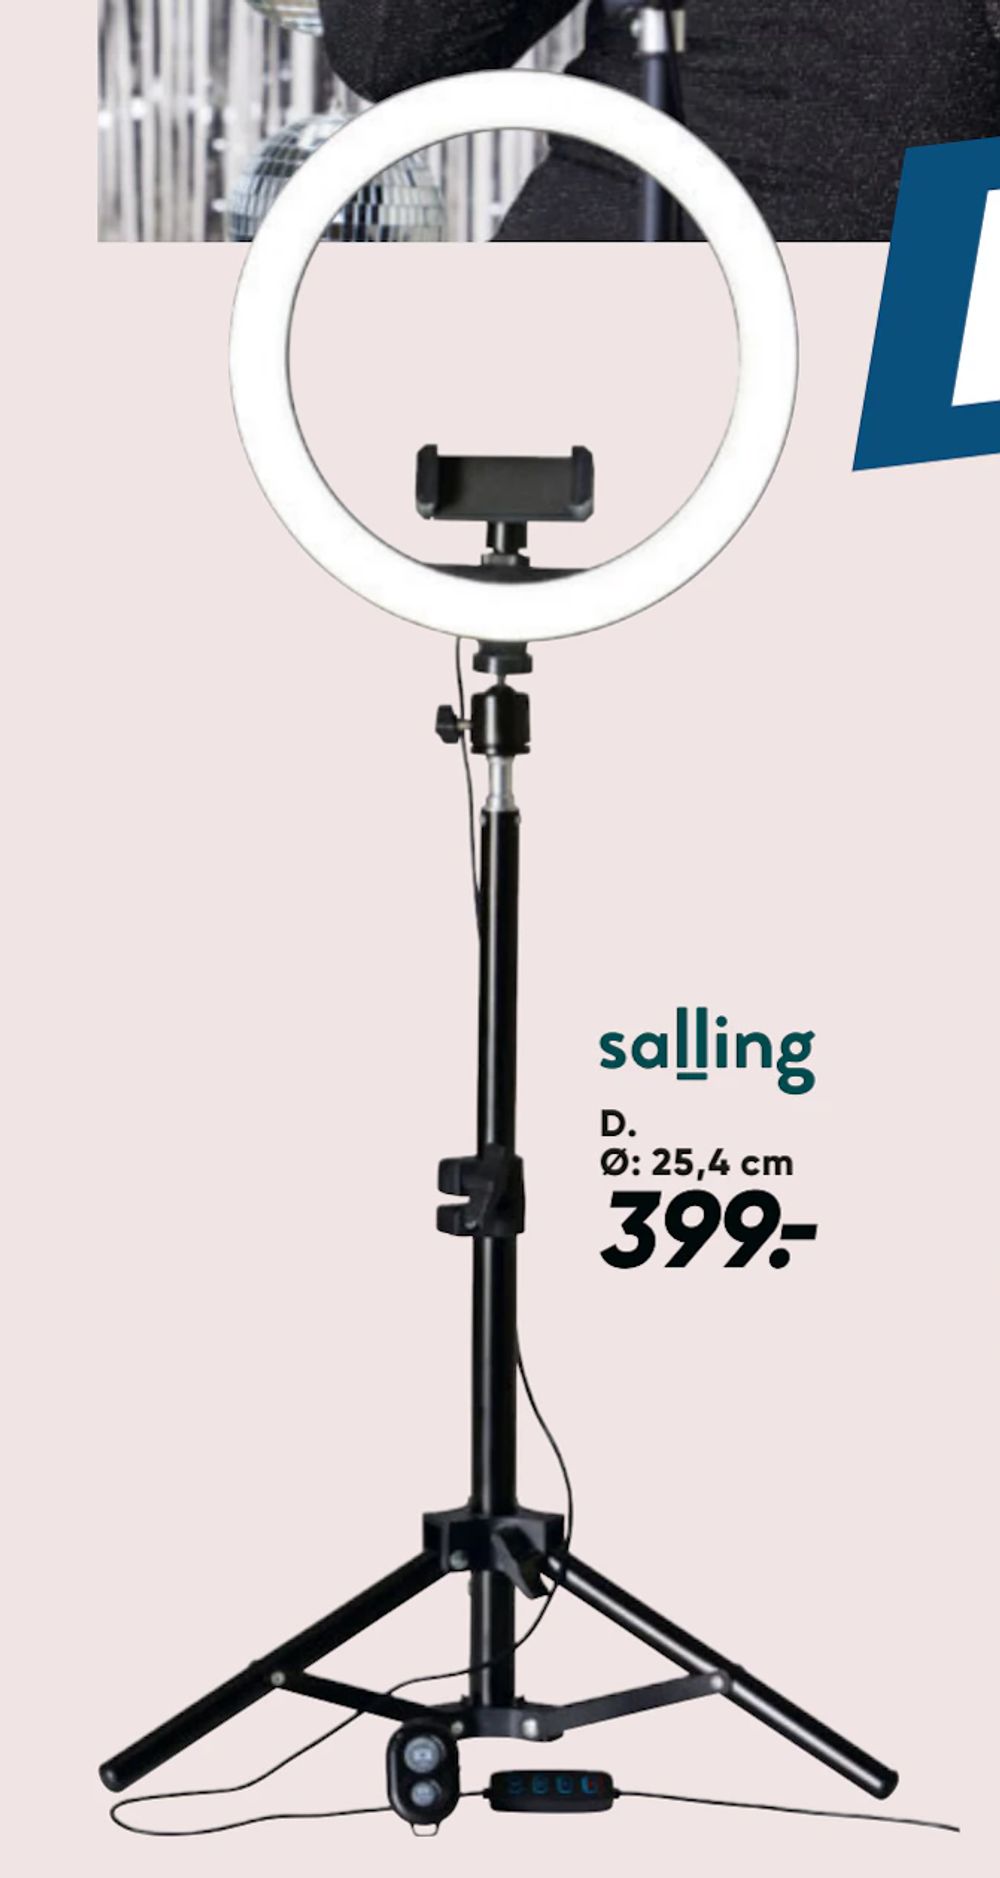 Tilbud på Ring Light lampe fra Bilka til 399 kr.